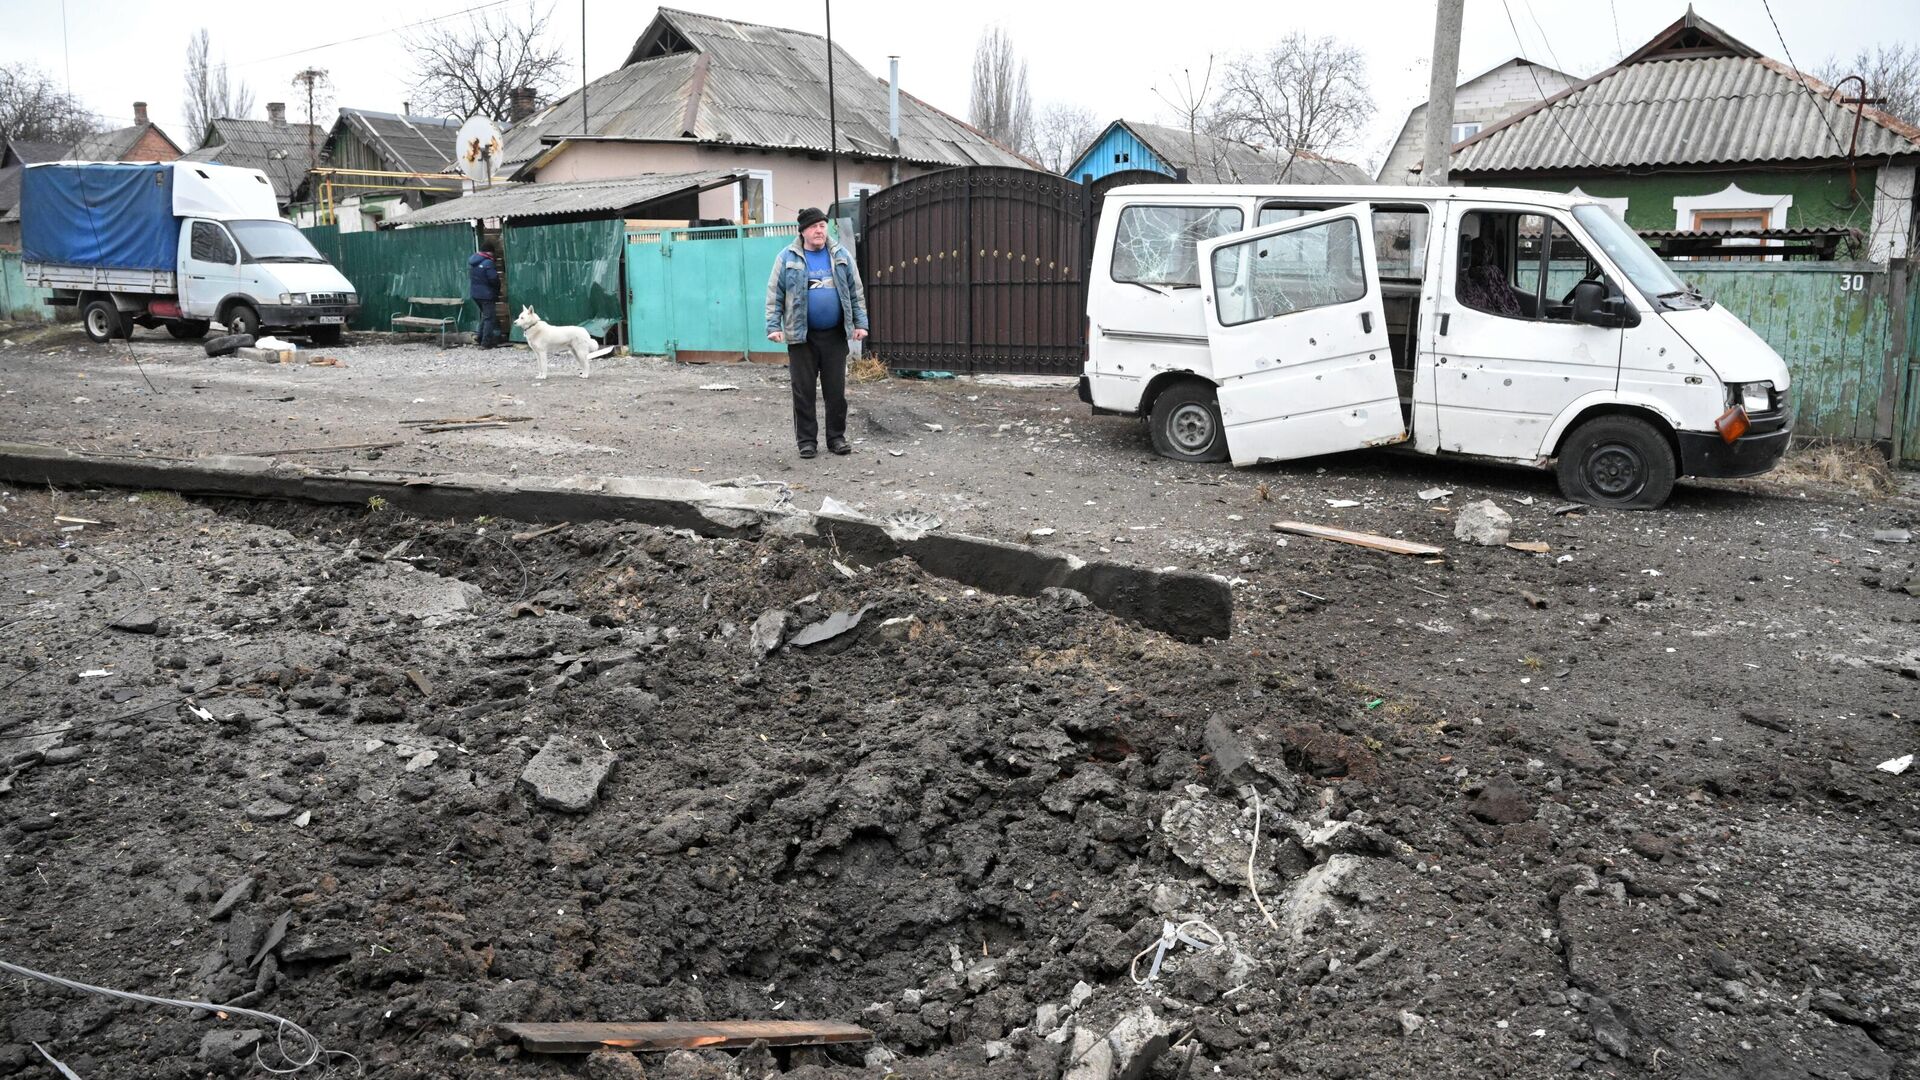 Hố đạn và chiếc ô tô bị hư hại do pháo kích ở quận Kievsky của Donetsk. - Sputnik Việt Nam, 1920, 05.03.2022